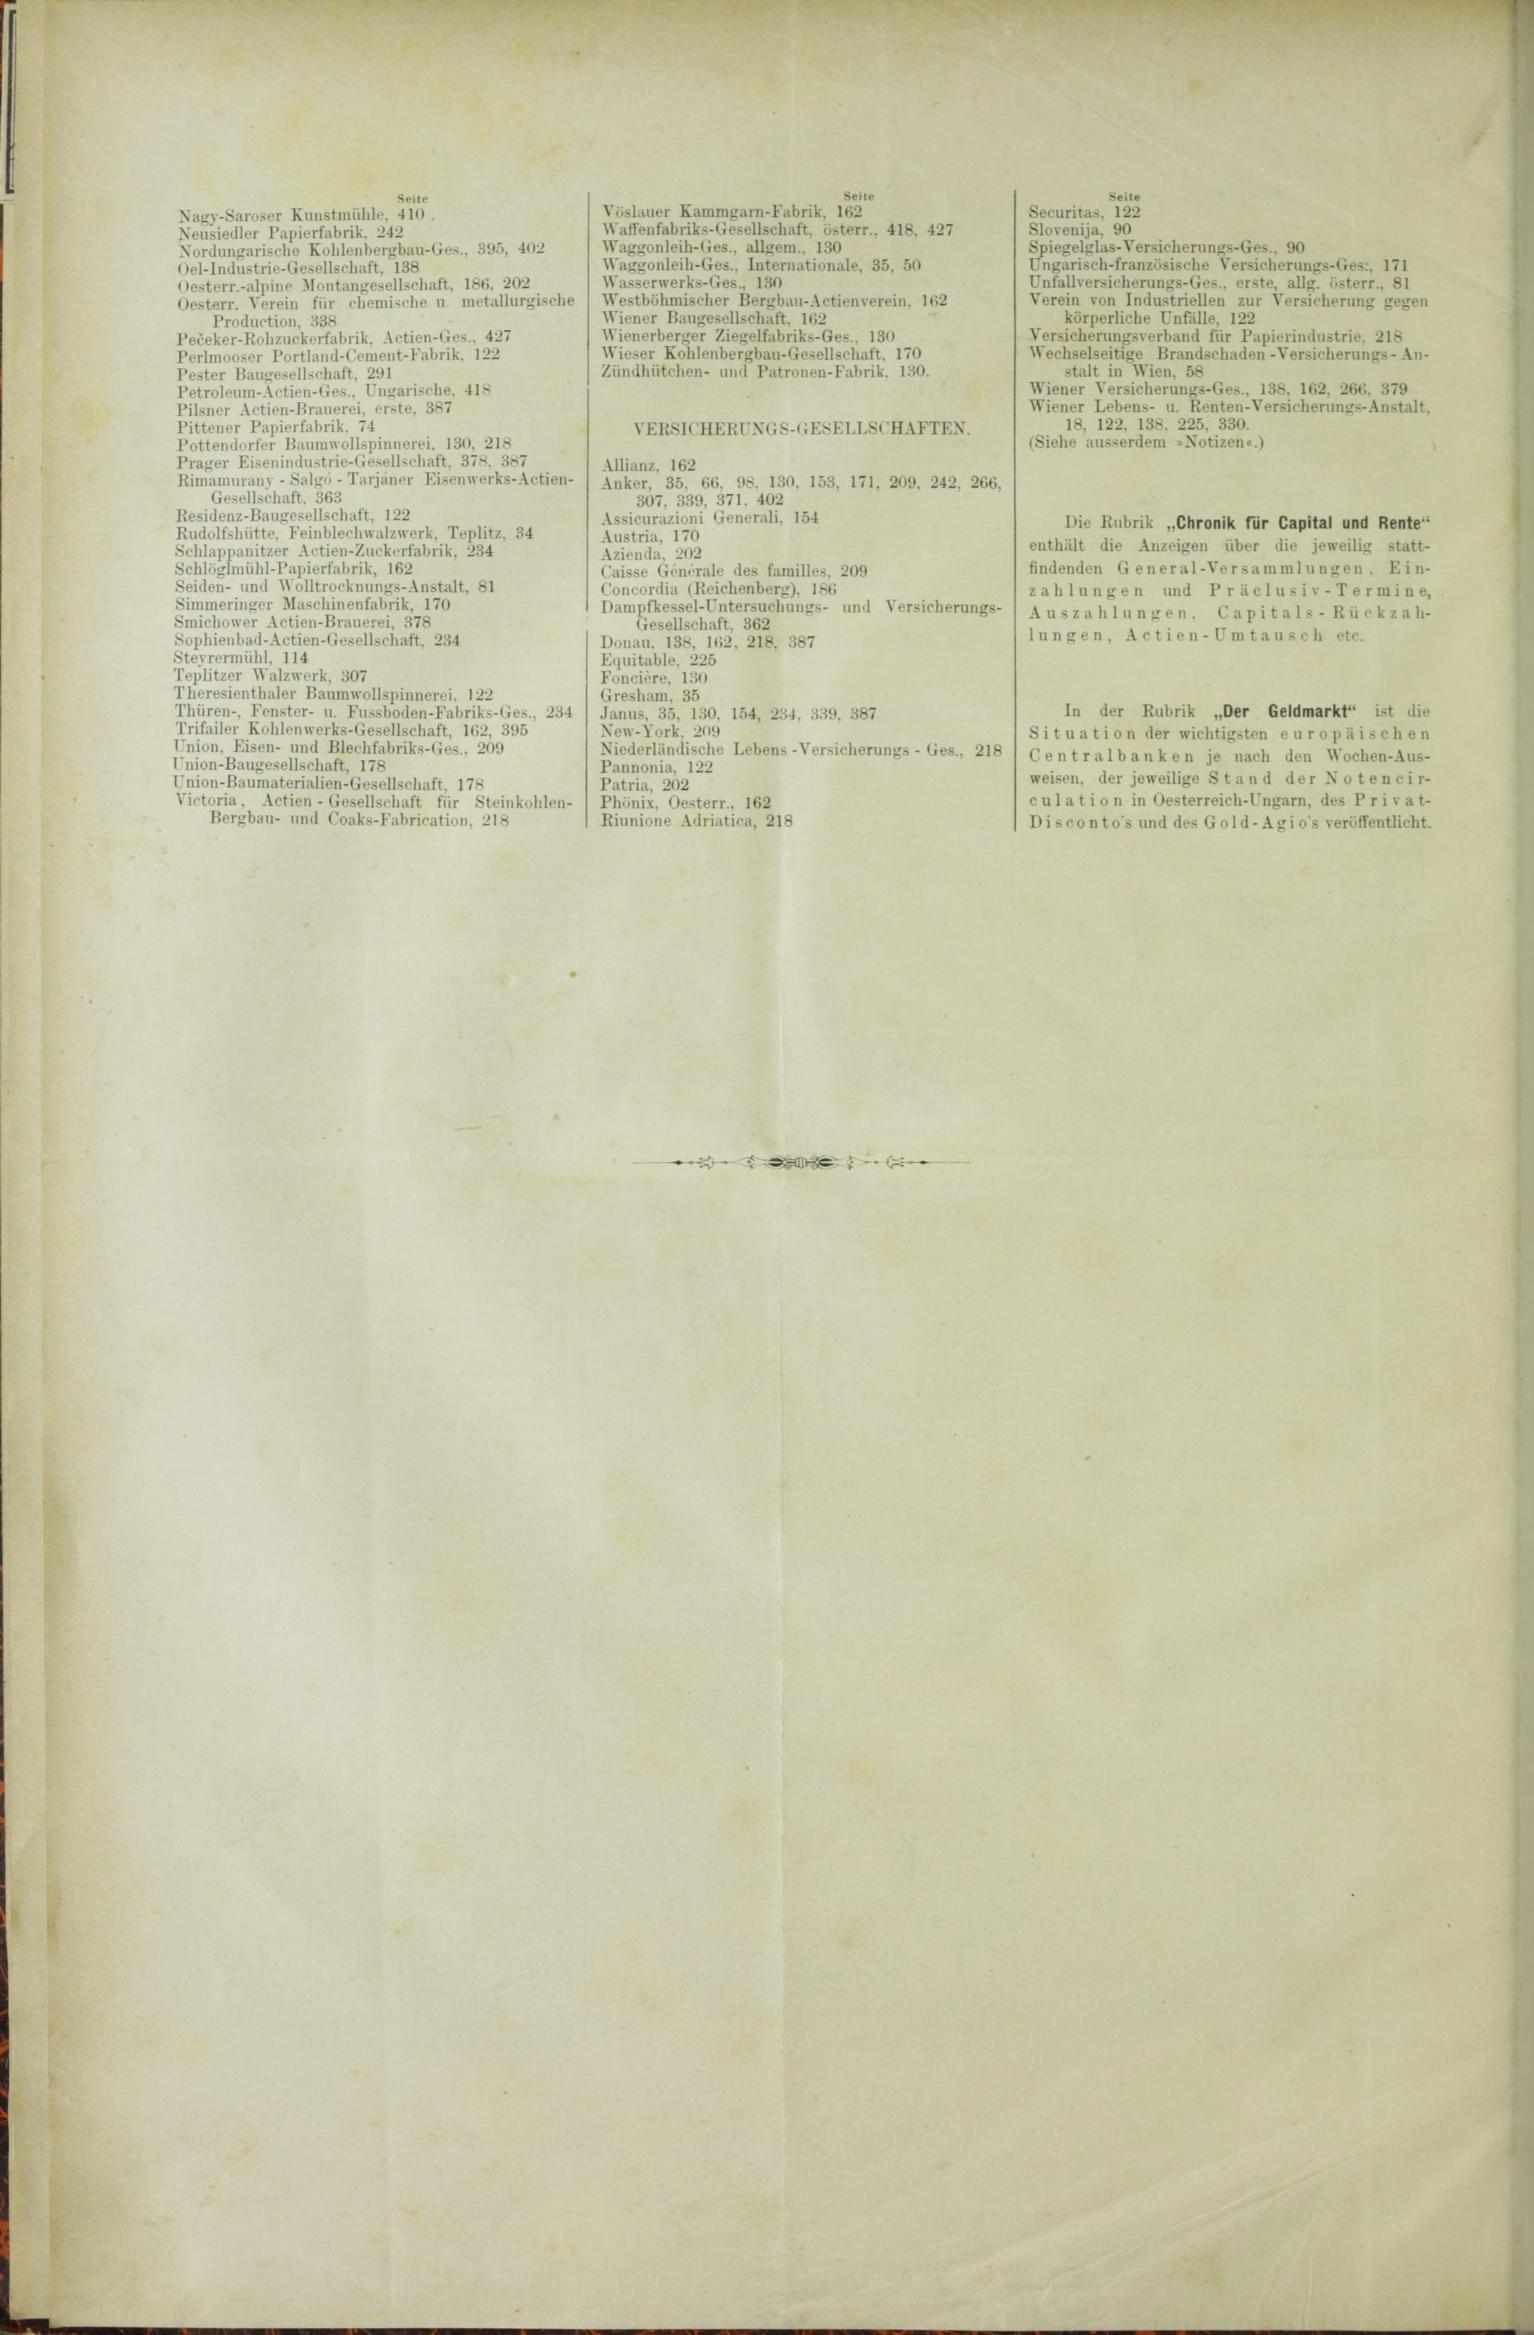 Der Tresor 10.12.1885 - Seite 12